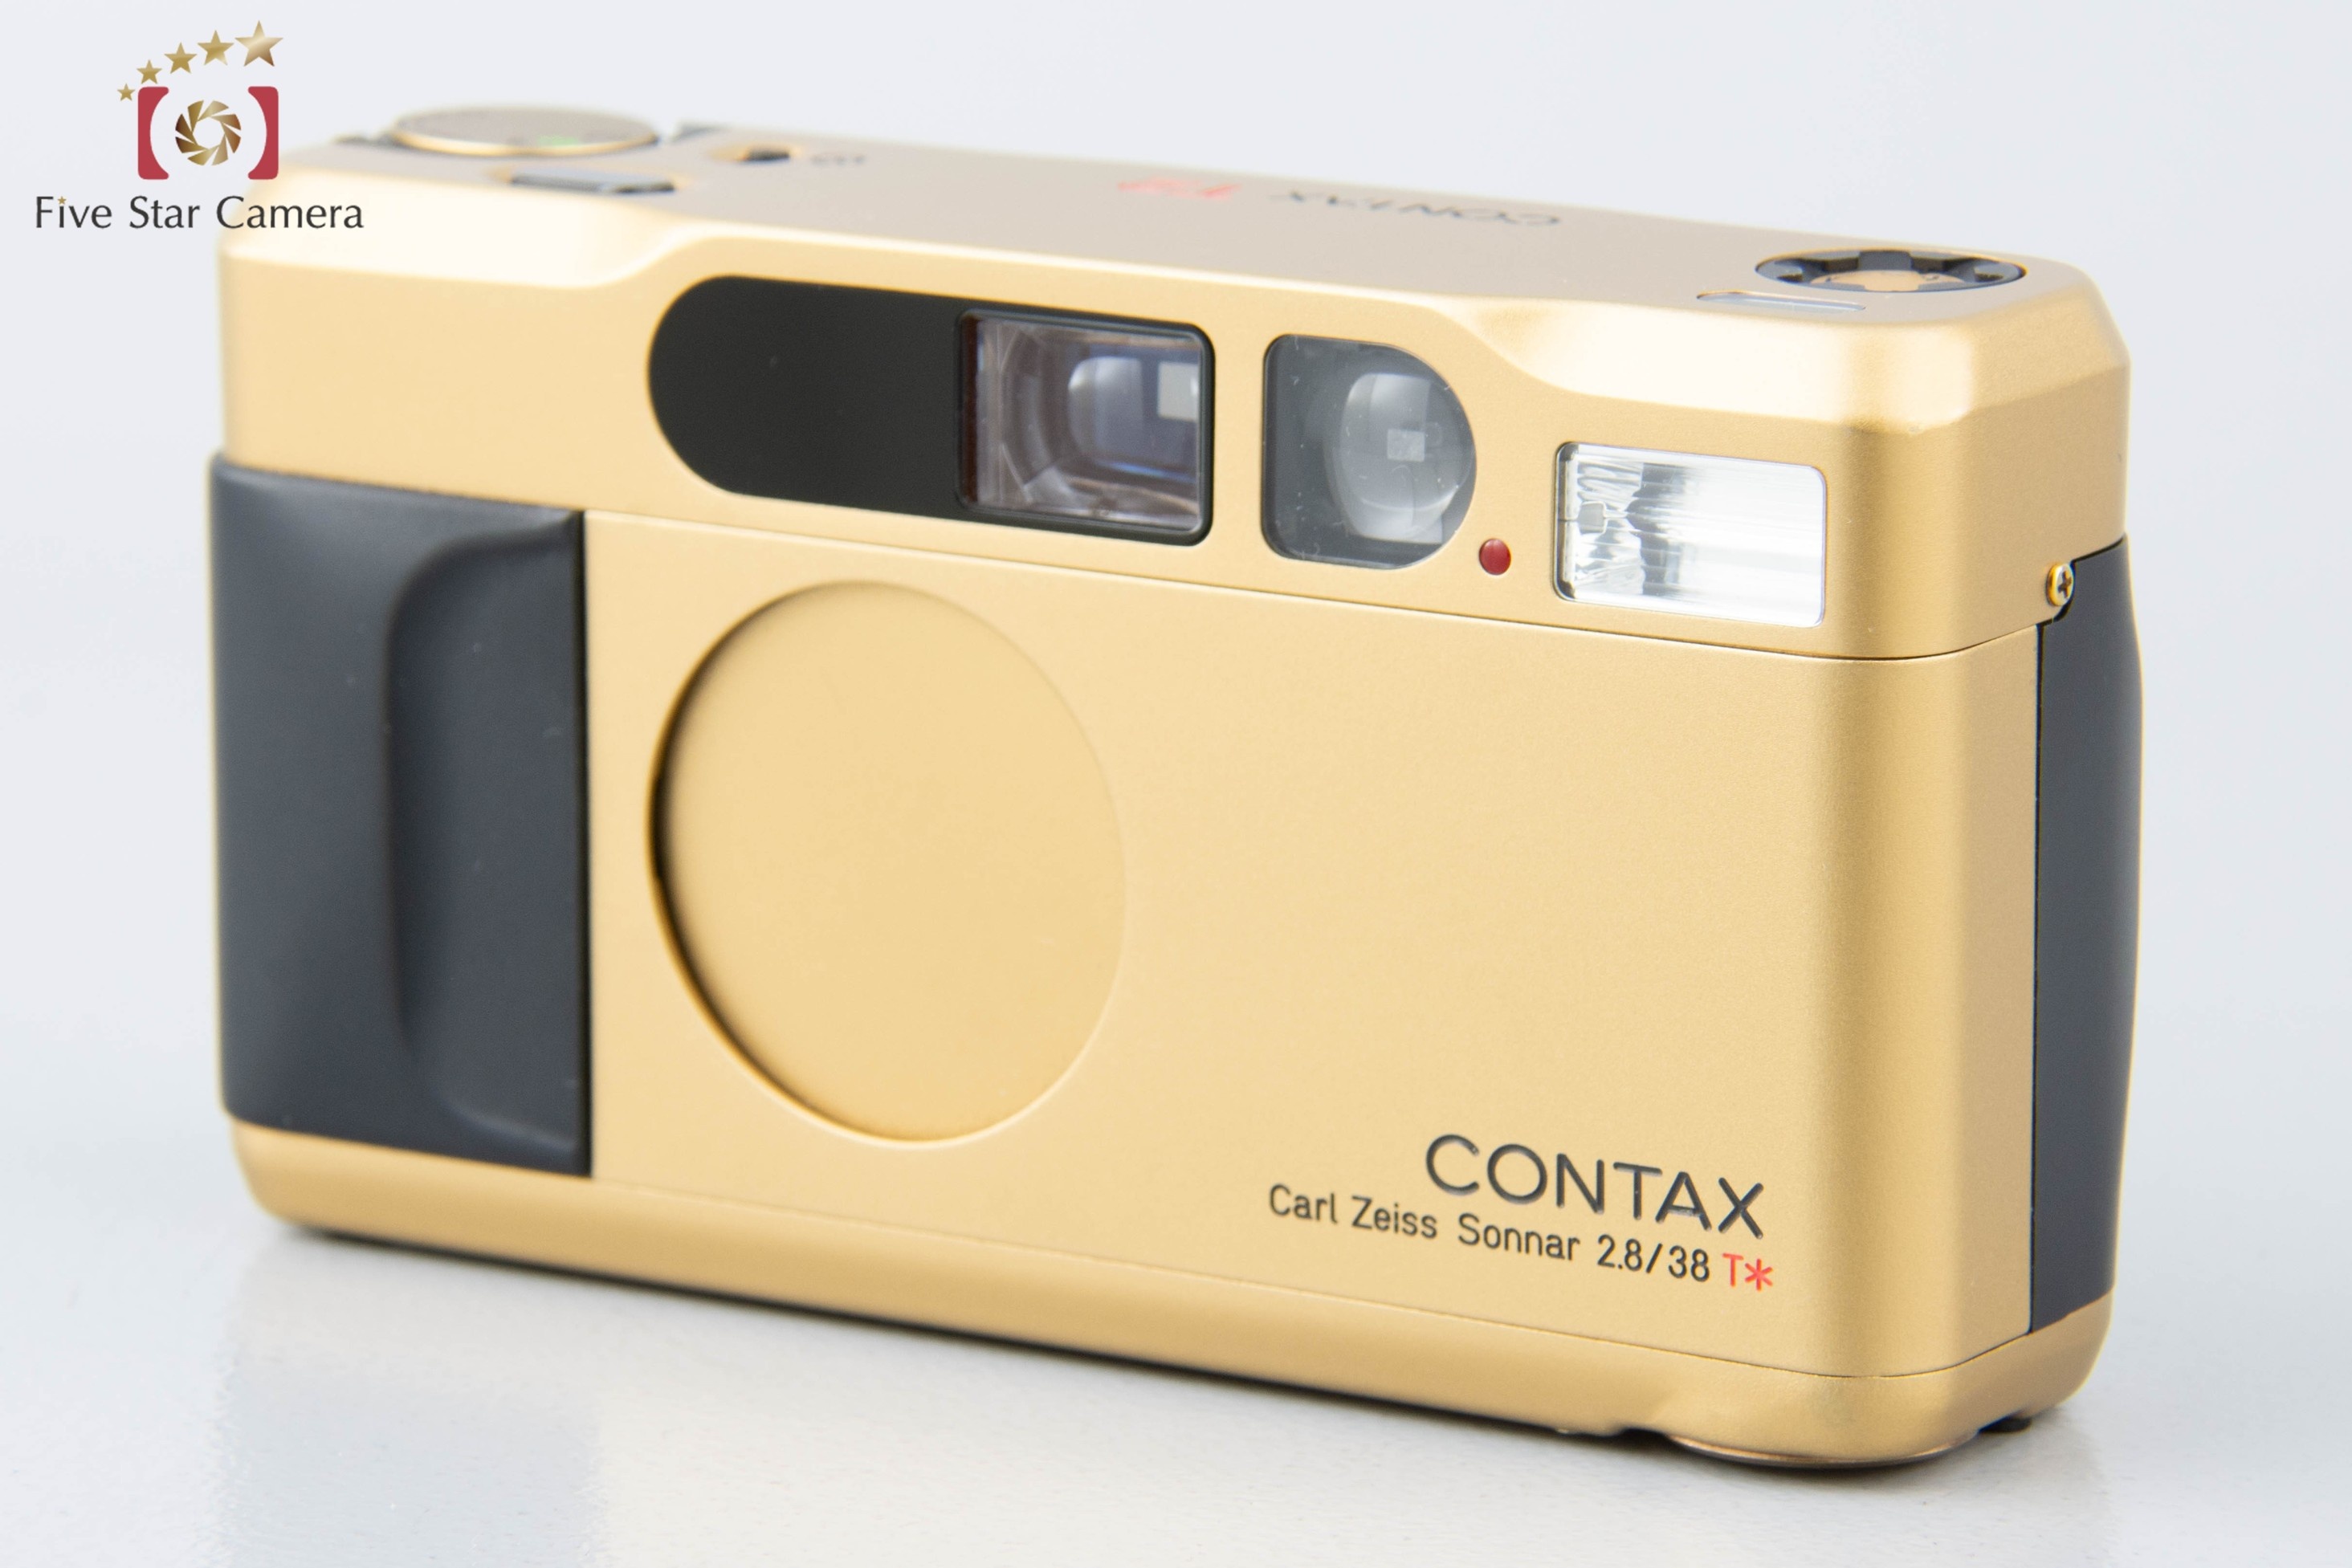 【開封未使用品】CONTAX コンタックス T2 ゴールド コンパクトフィルムカメラ